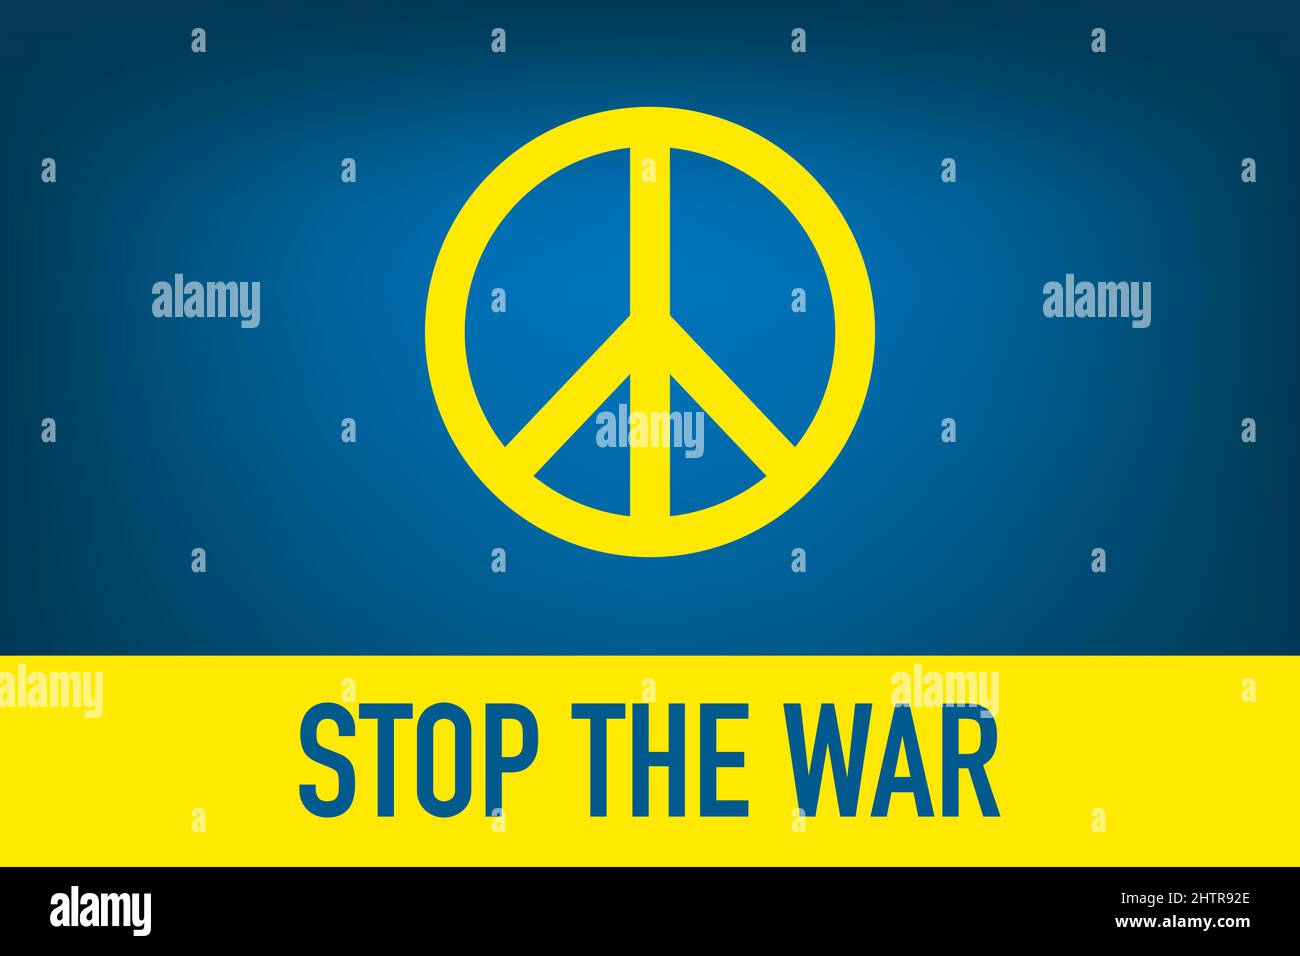 Arrêtez la guerre - bannière aux couleurs du drapeau ukrainien avec signe de paix Illustration de Vecteur